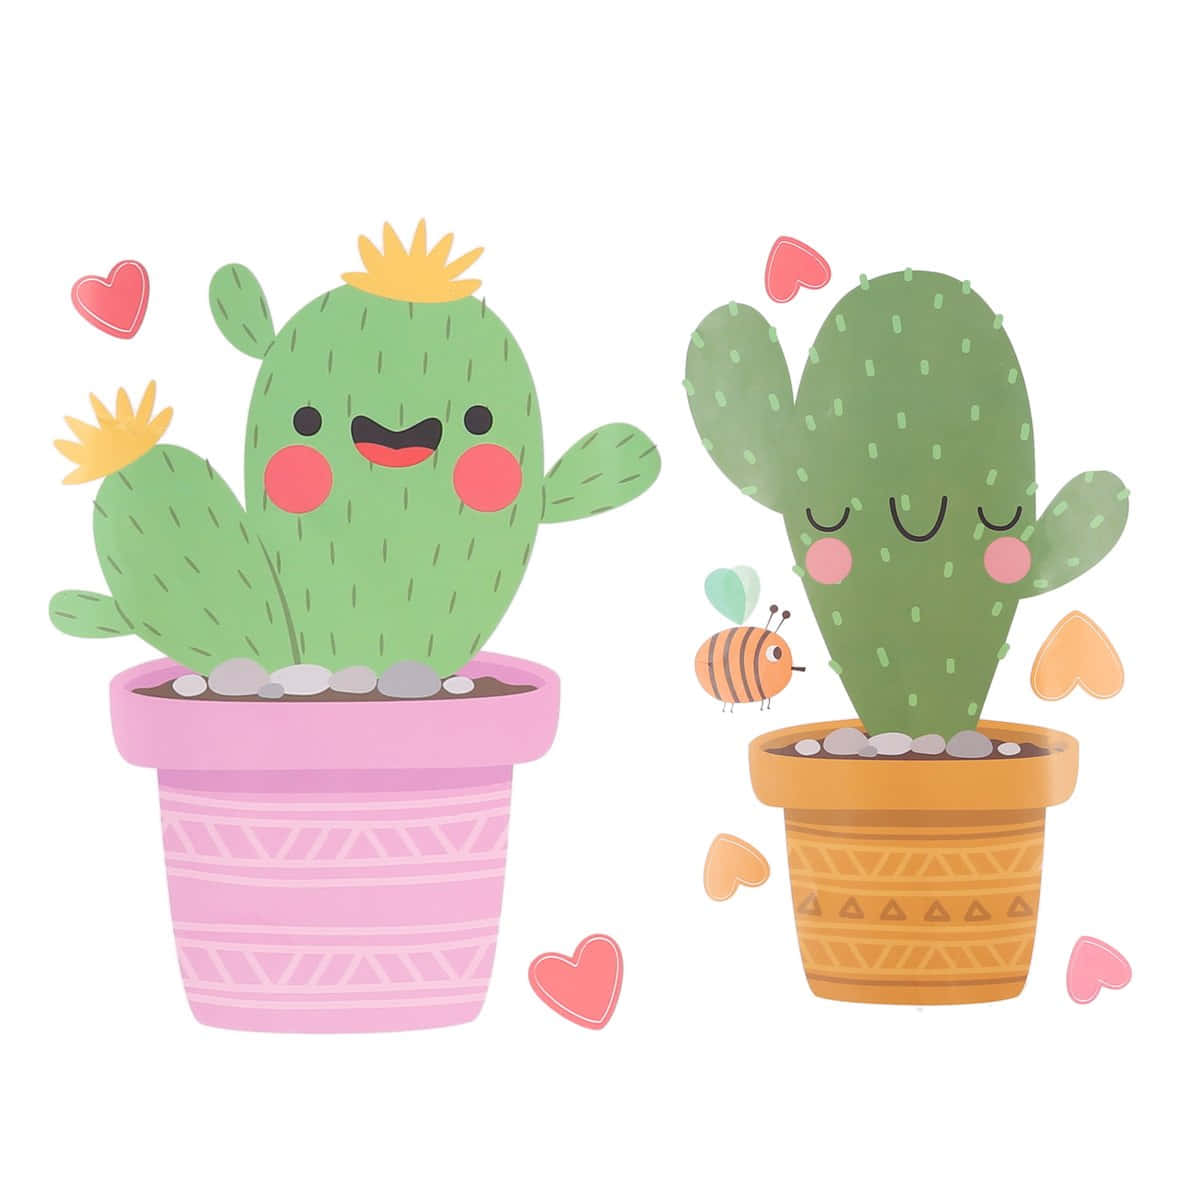 En lyst smilende kaktus fuld af pigge og karakter Wallpaper